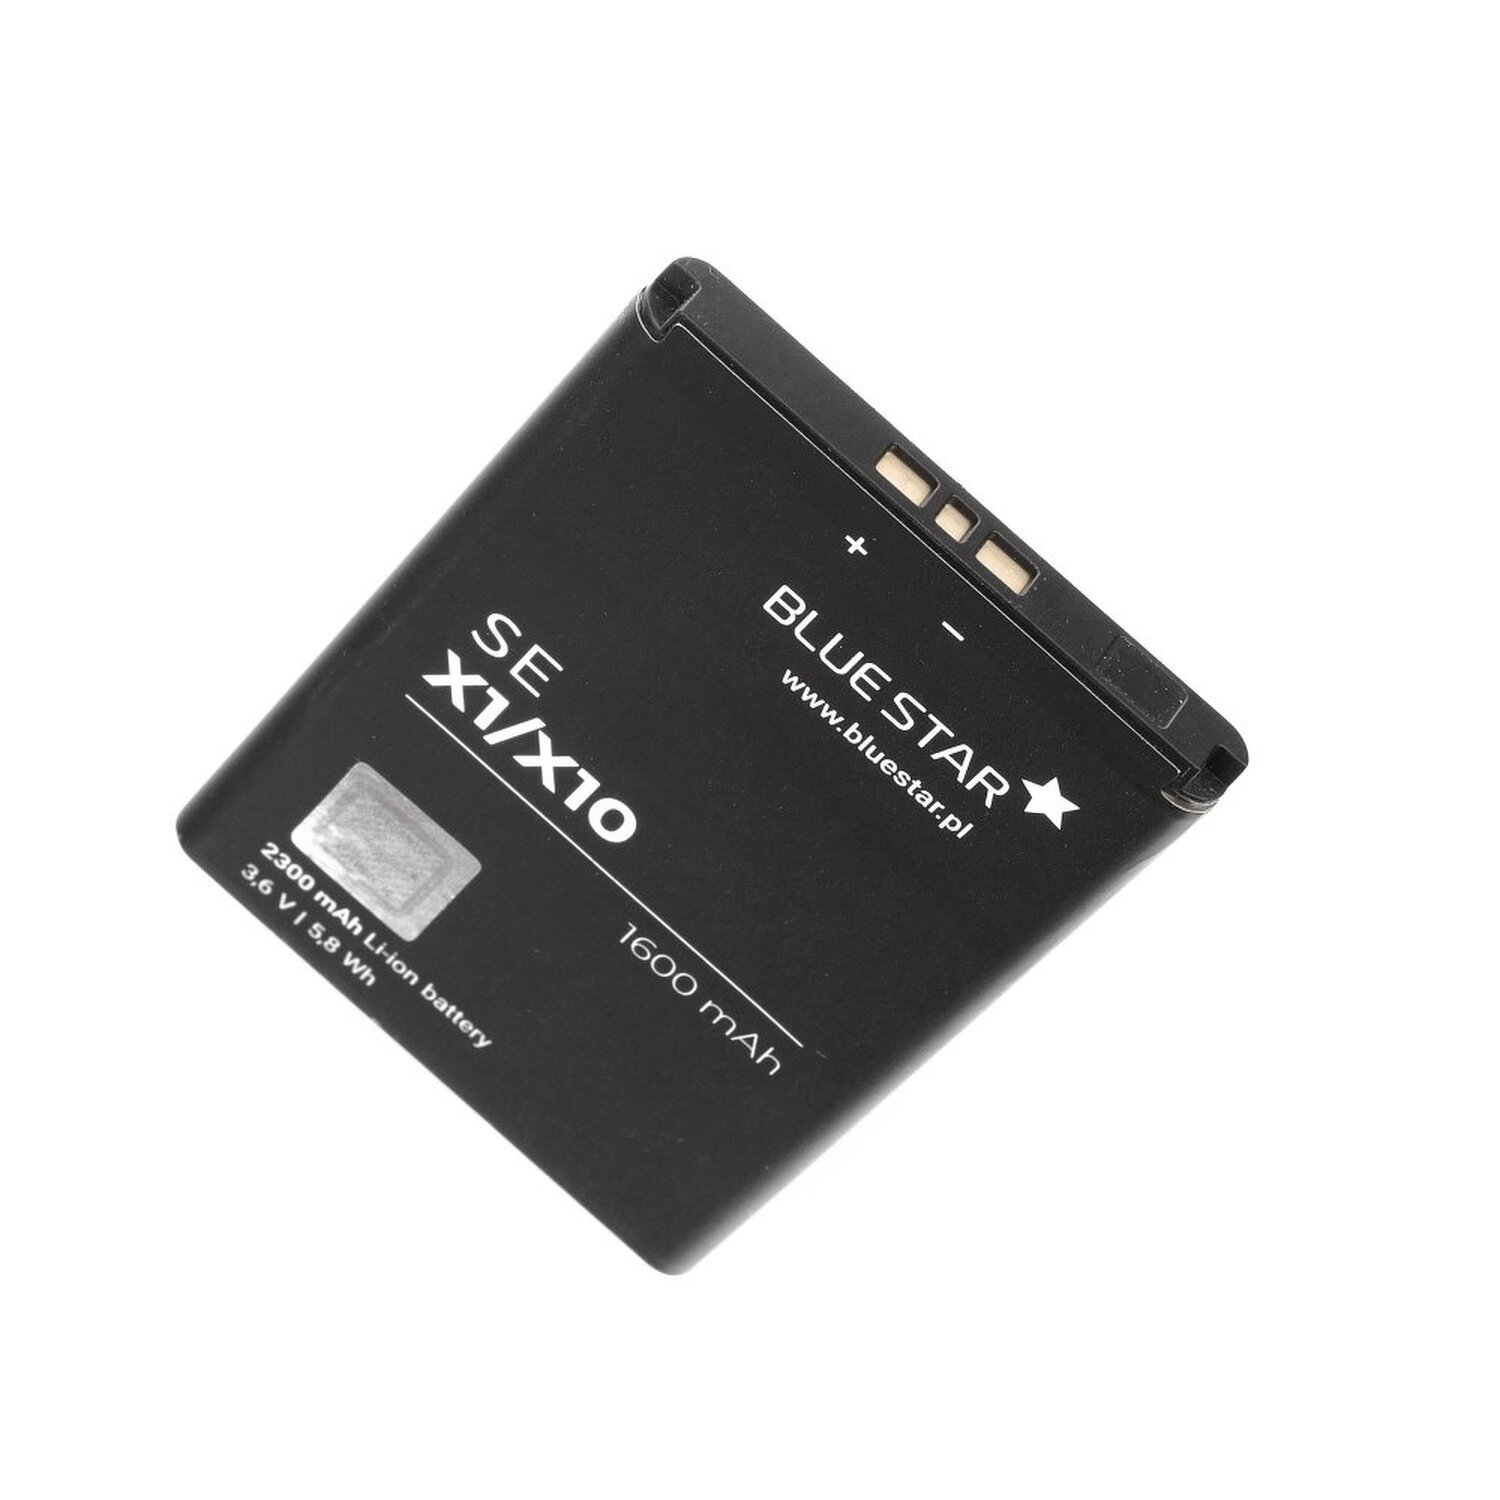 BLUESTAR Akku für Sony Xperia X10 Handyakku X1 Li-Ion 